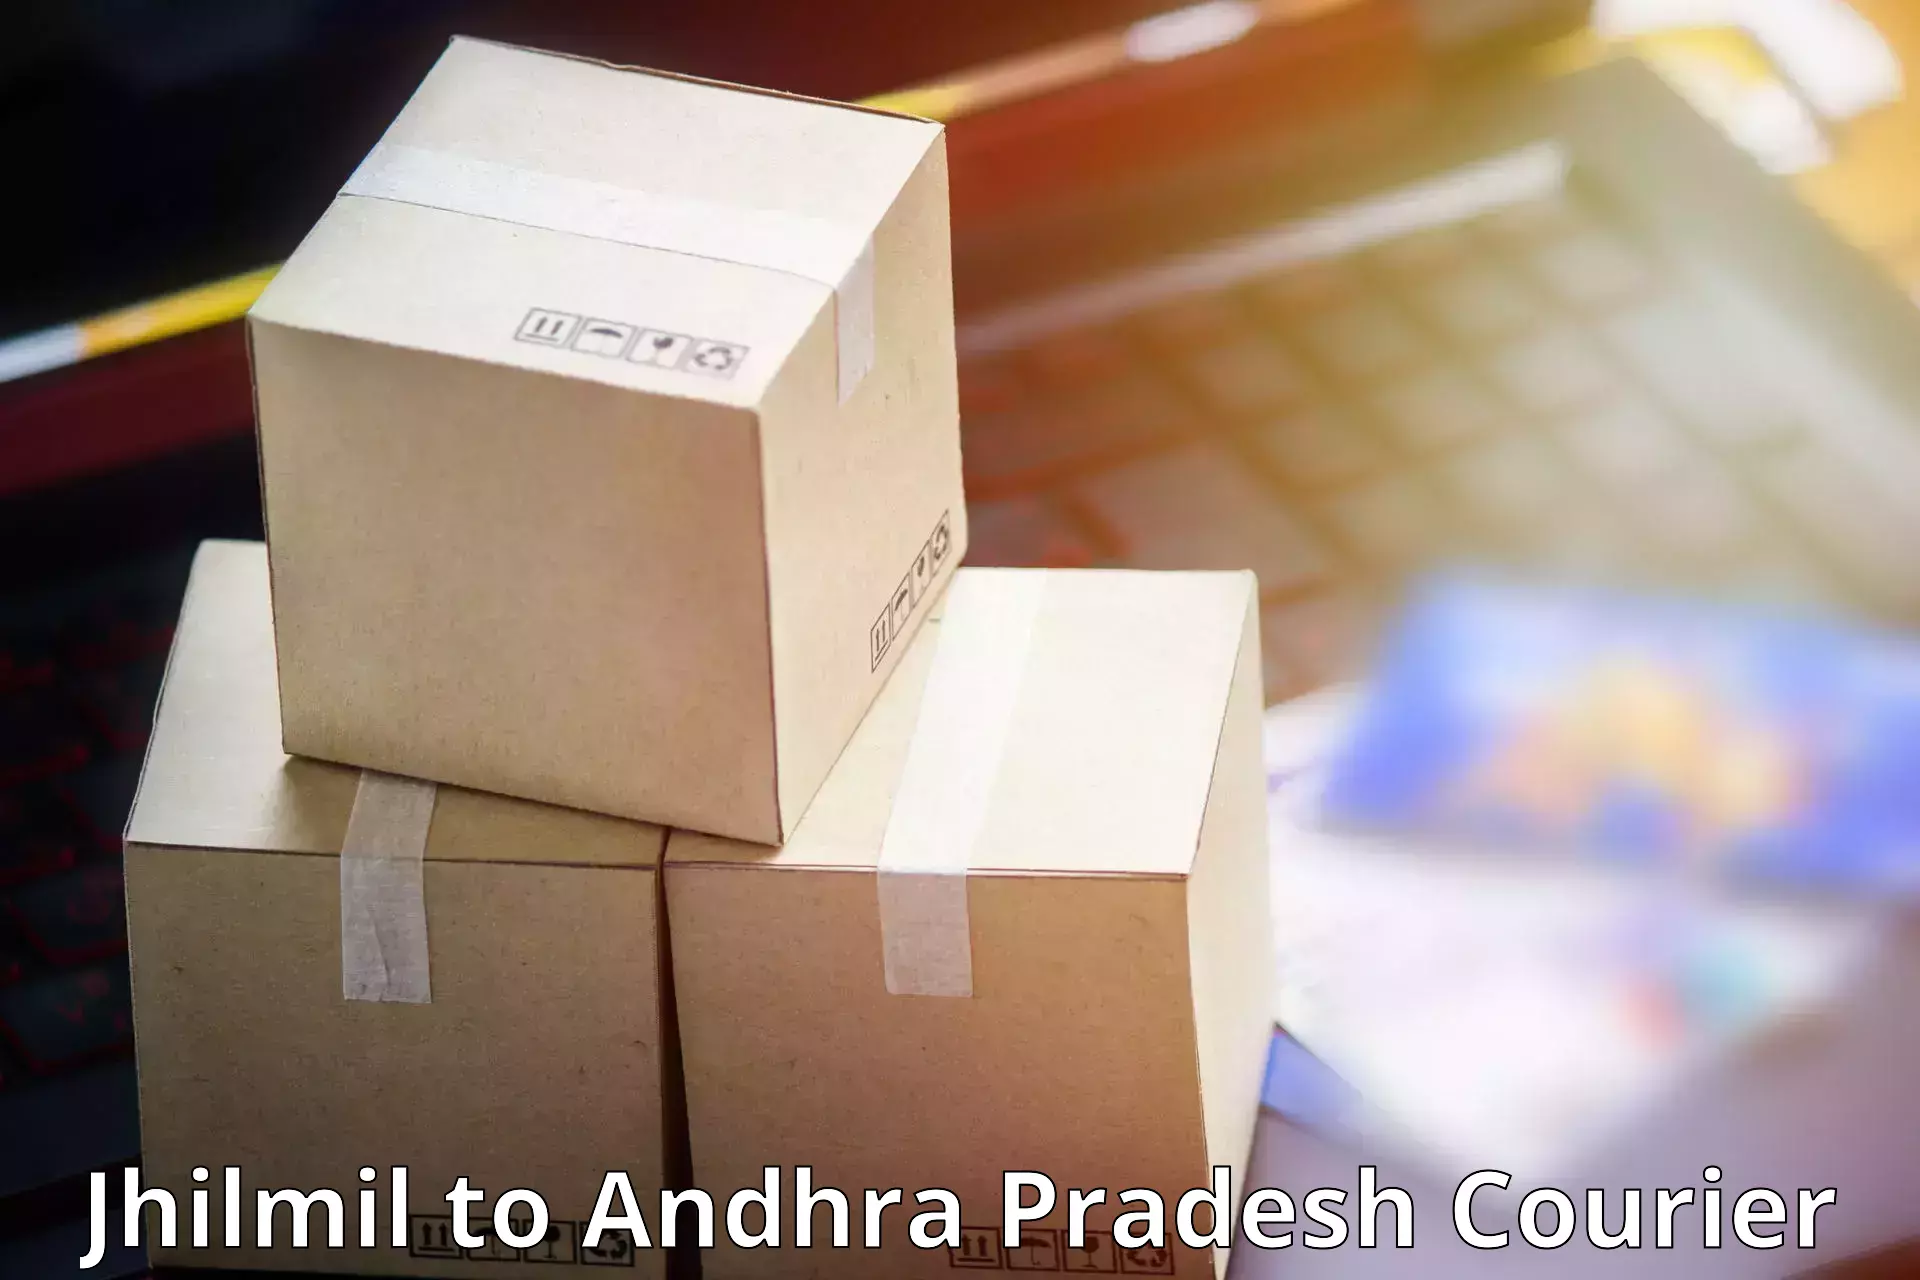 Reliable parcel services Jhilmil to West Godavari